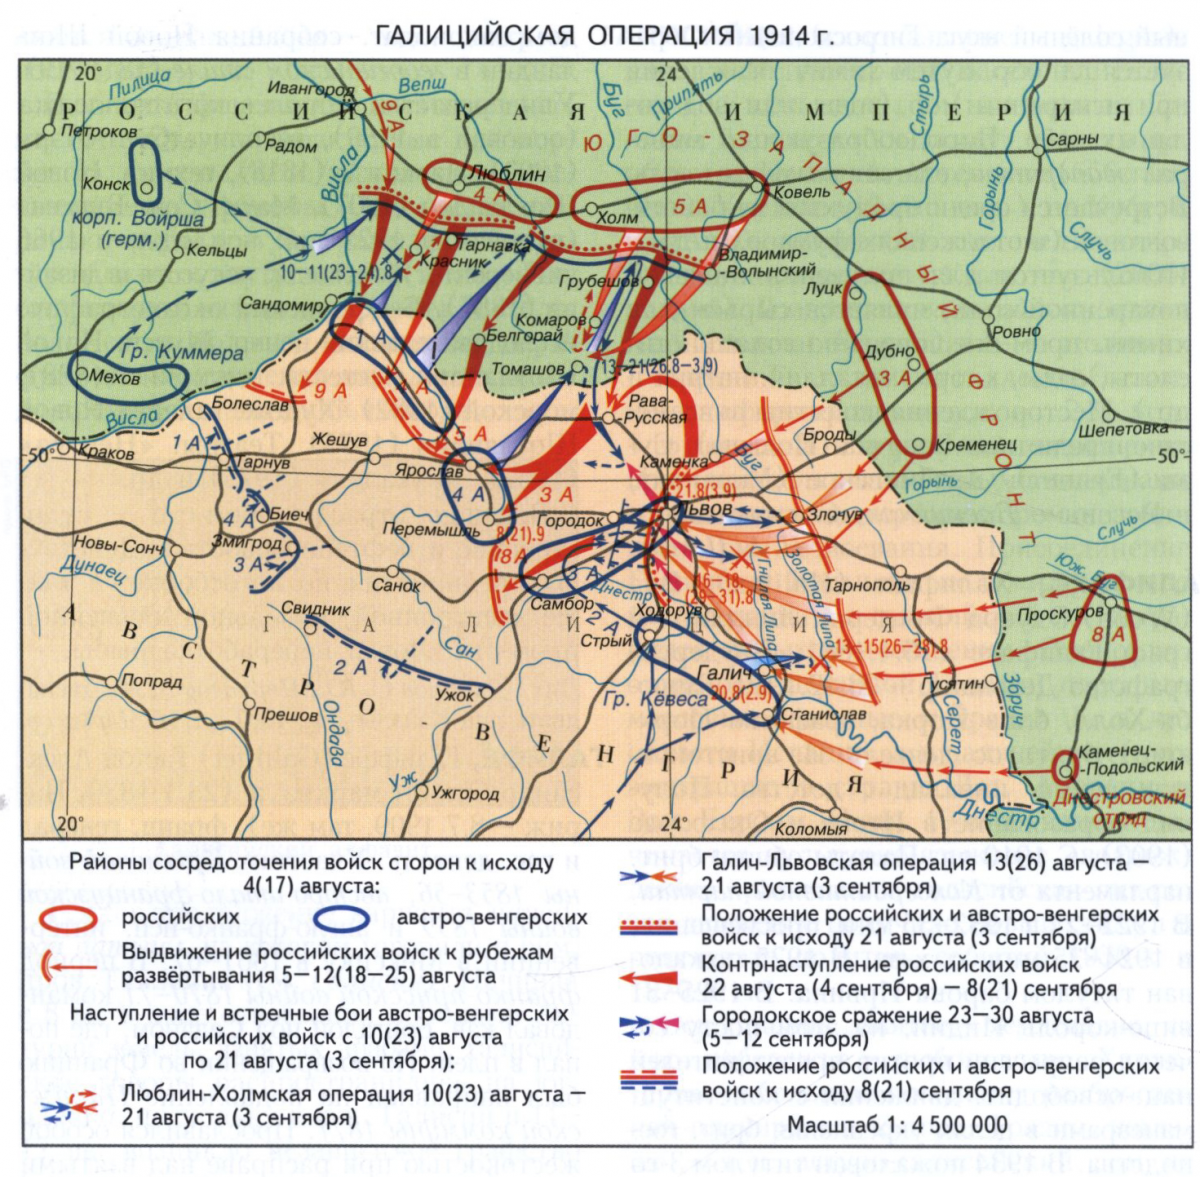 Галицийская операция 1914 года